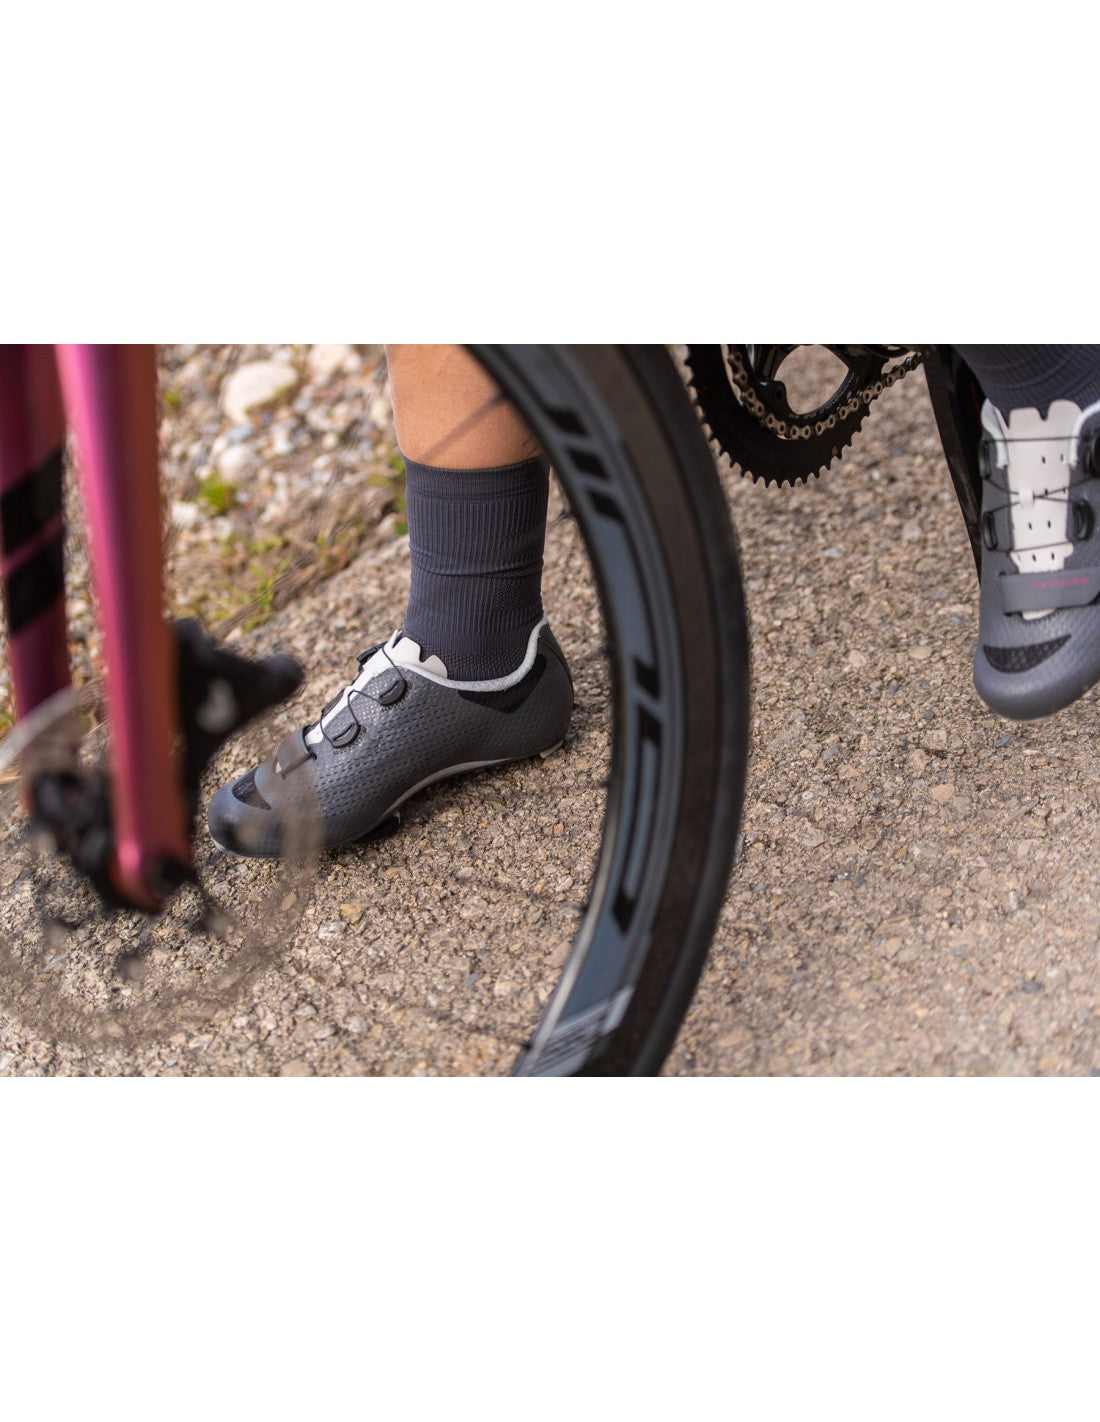 NORTHWAVE chaussures de vélo de route STORM 2 WMN - Femme